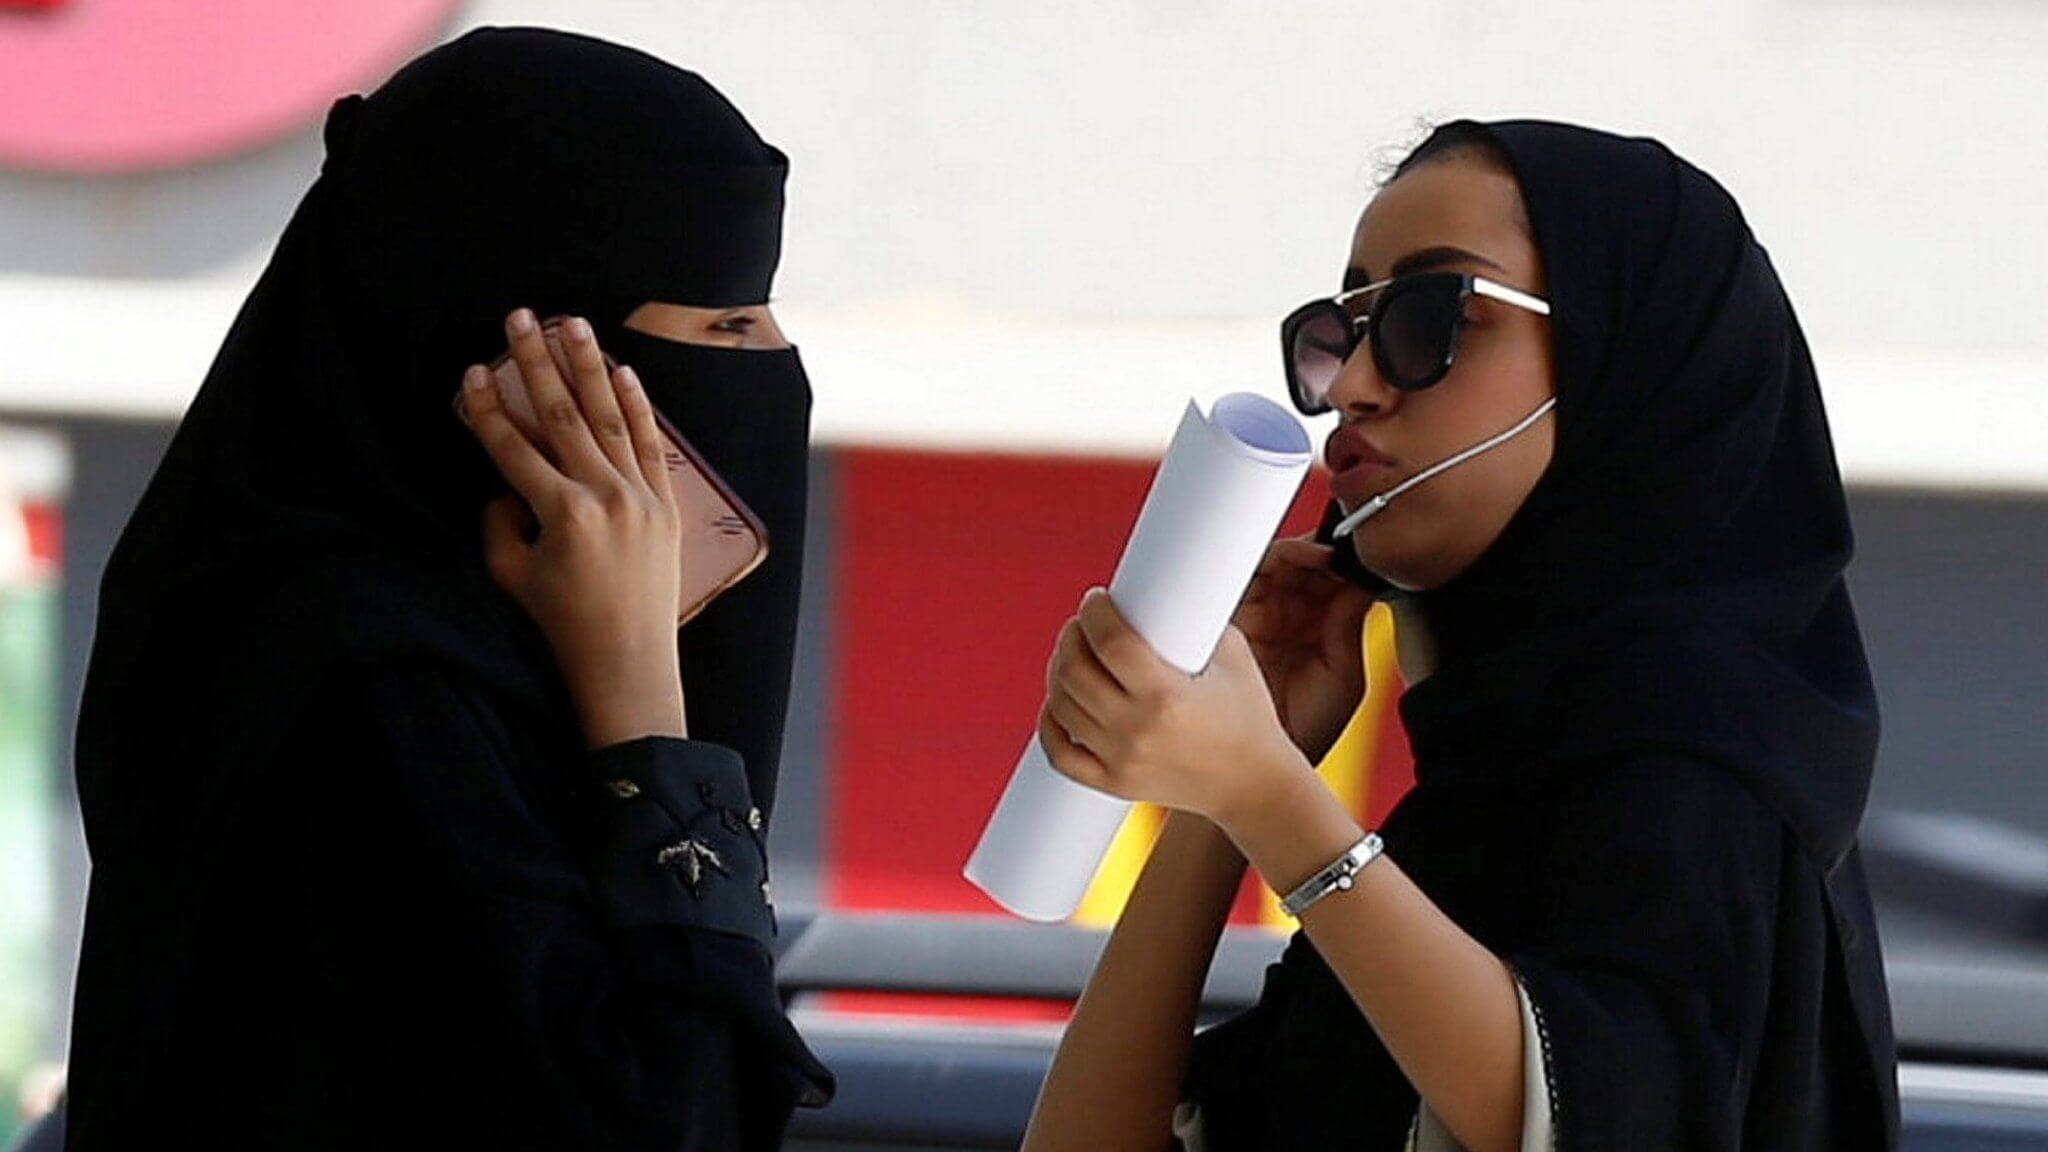 تاريخ جديد تسطّره السعوديّة بقرارات مُنصفة ومُعززة لدور المرأة في المملكة